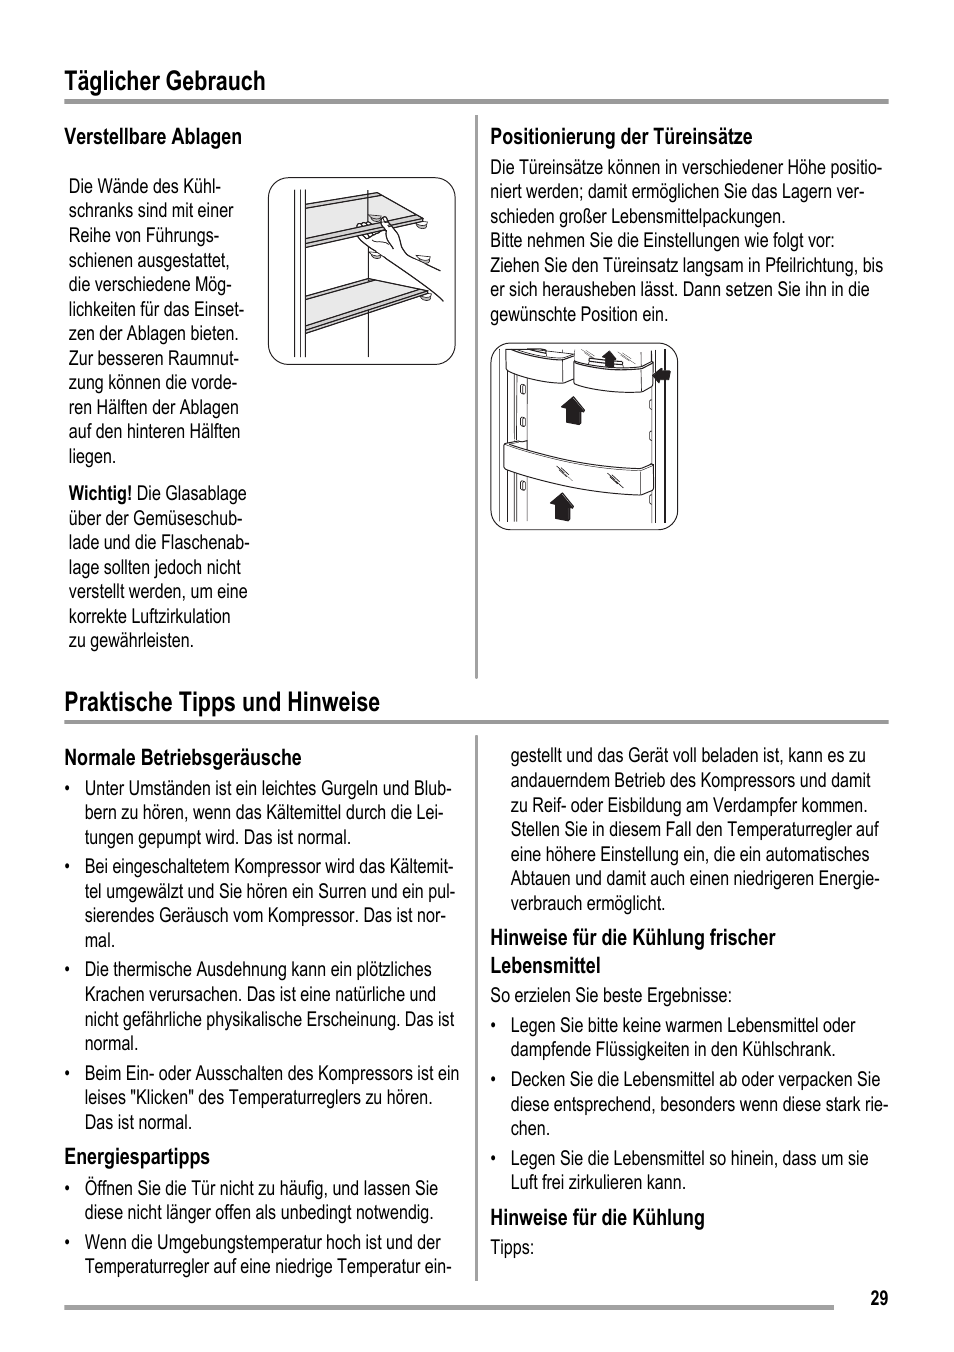 Täglicher gebrauch, Praktische tipps und hinweise | ZANKER ZKK 9008 User Manual | Page 29 / 36